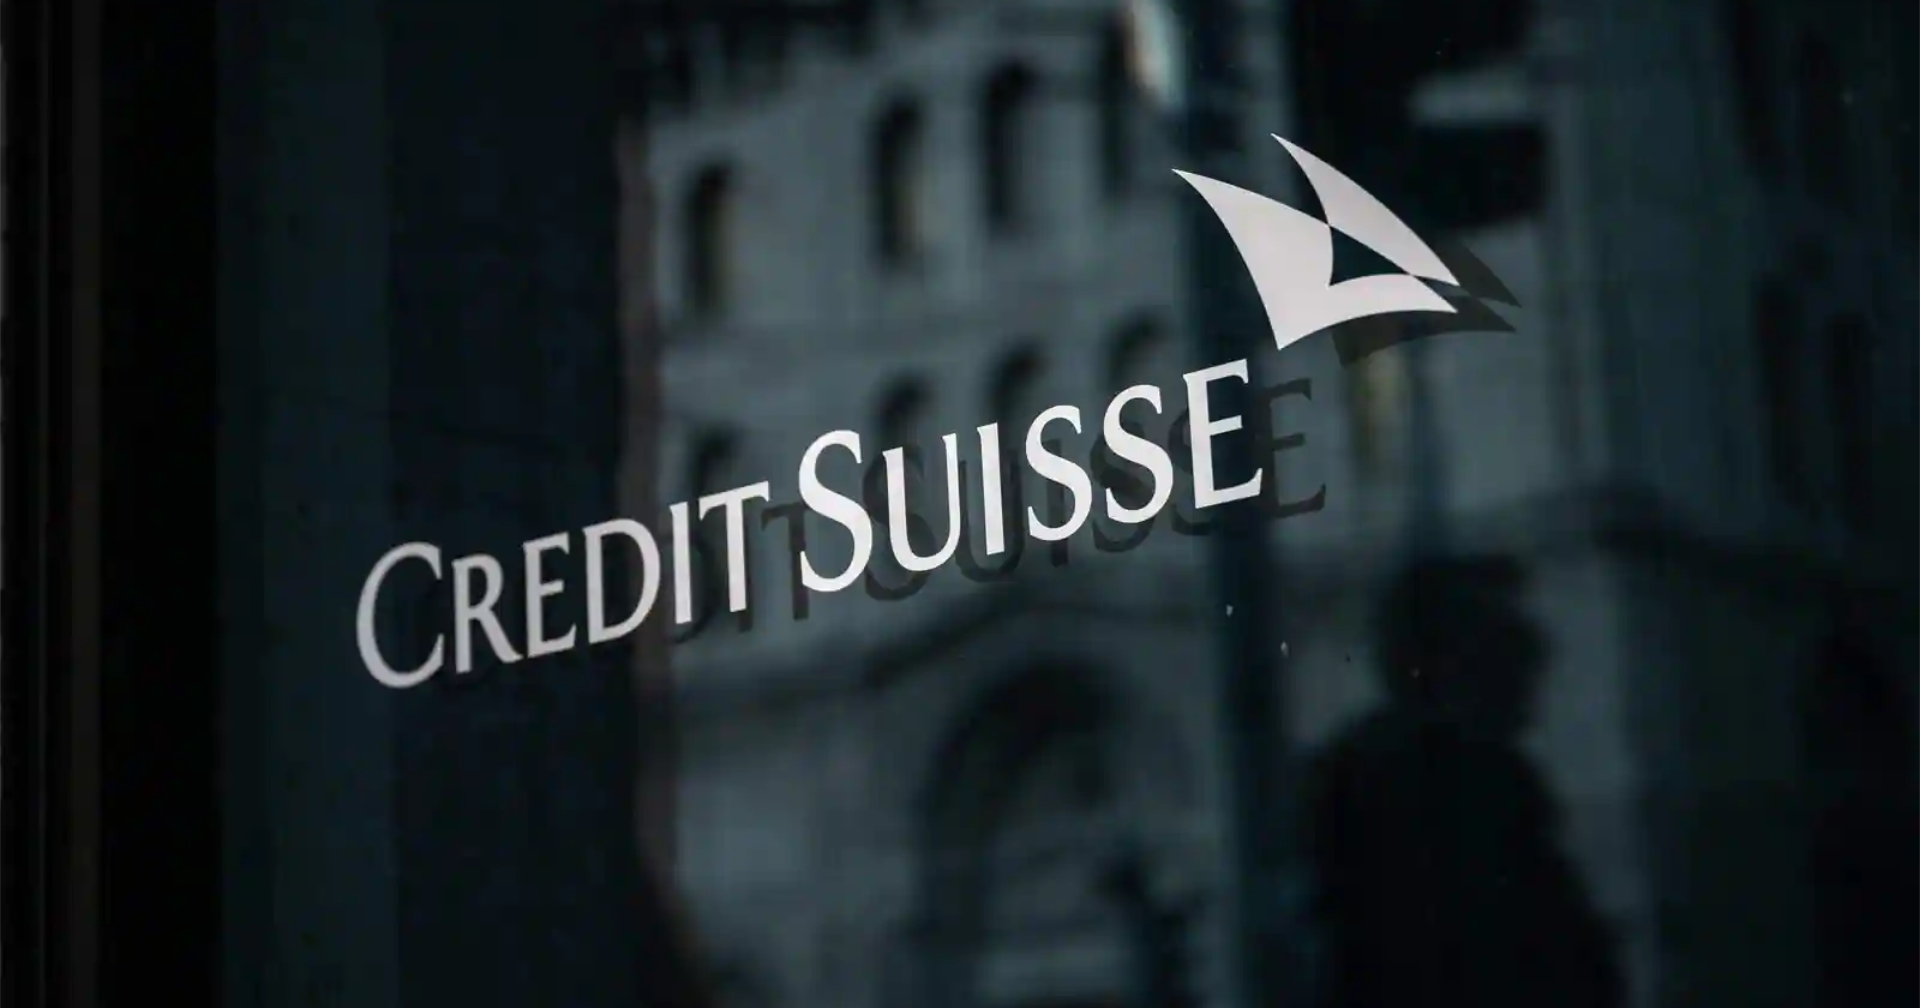 ธปท. ประเมินกรณี Credit Suisse ไม่กระทบระบบการเงินไทย